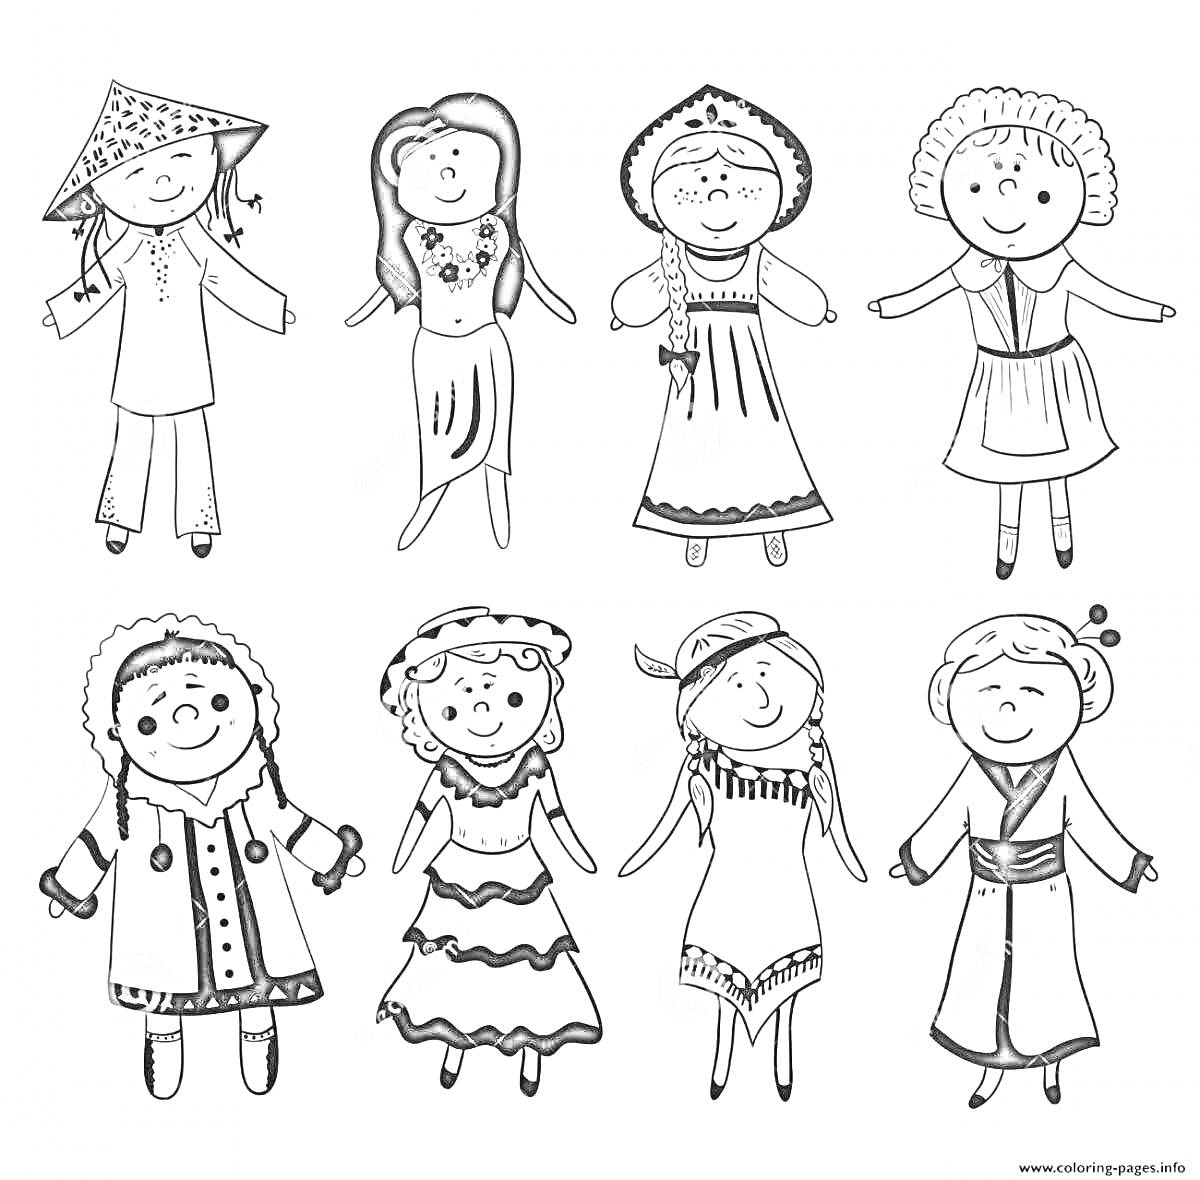 Раскраска Дружба народов, дети в народных костюмах из разных стран